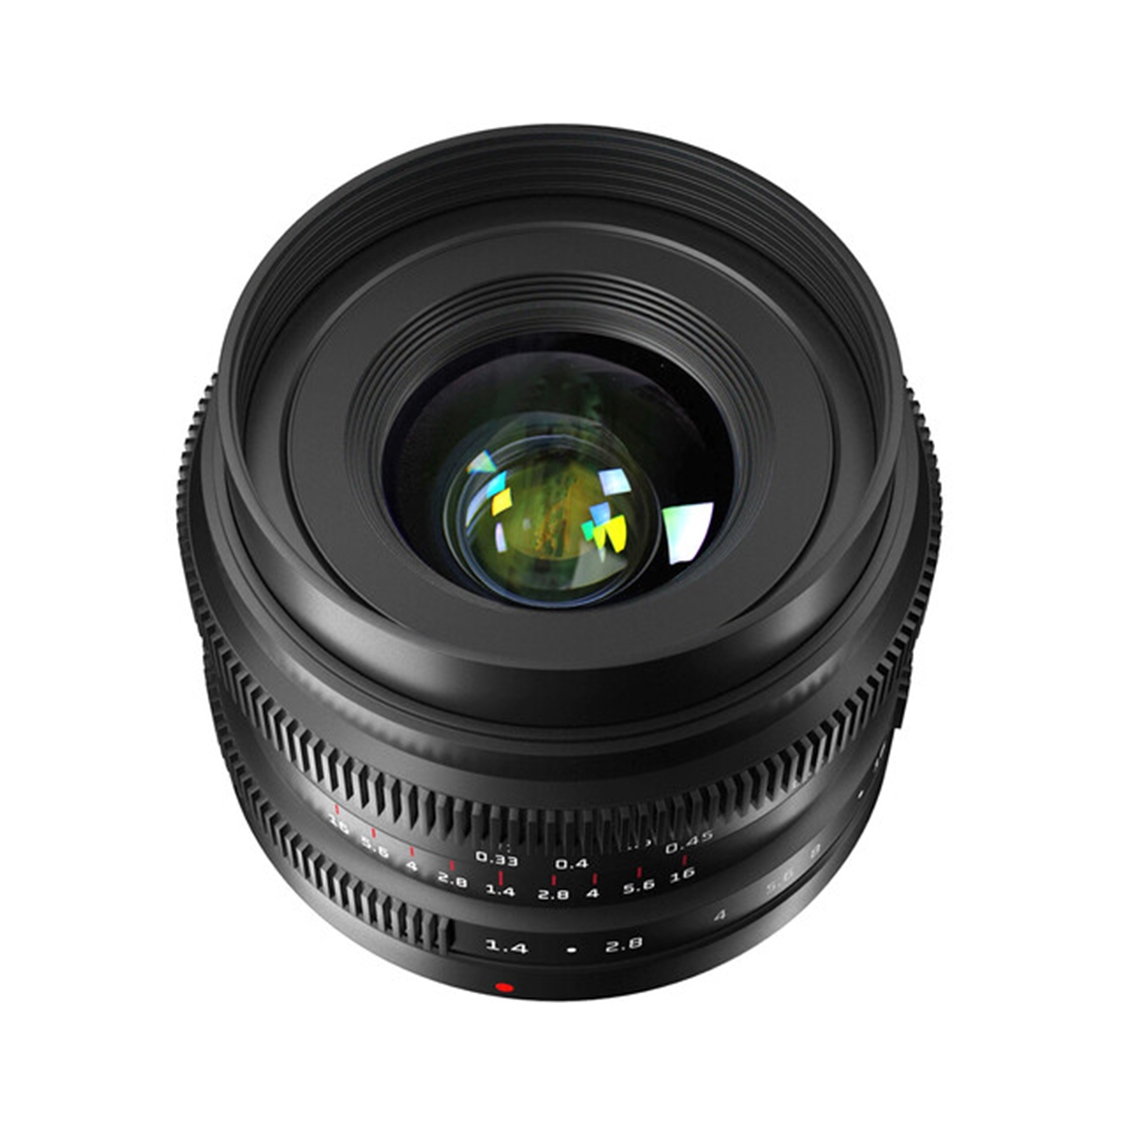 7Artisans 35mm F1.4 II Lens for Sony E Mount